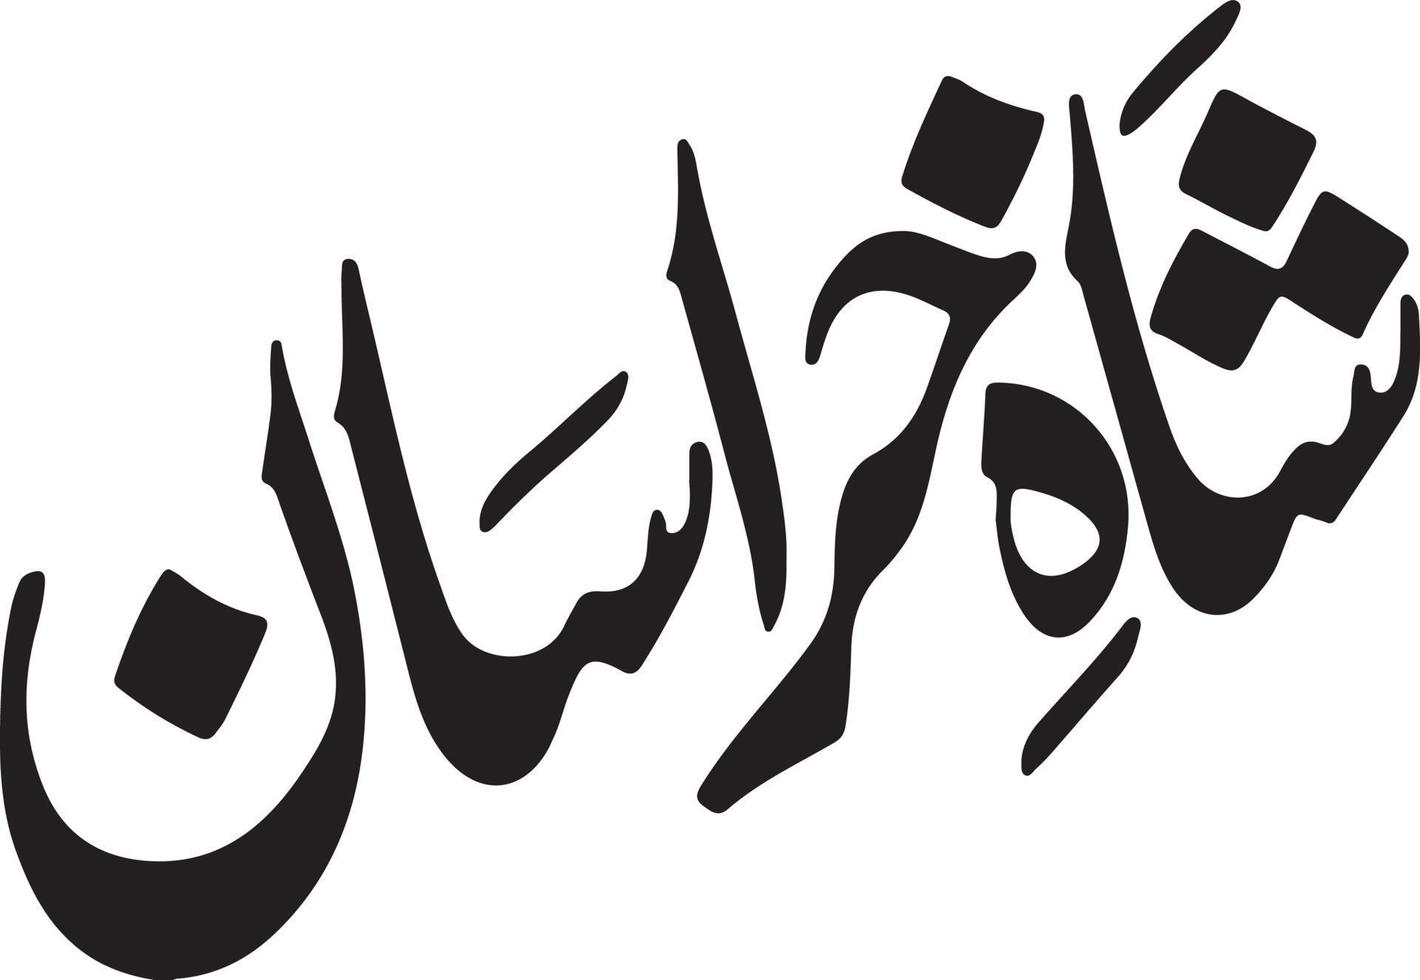 saha kherasan titre islamique ourdou calligraphie arabe vecteur gratuit